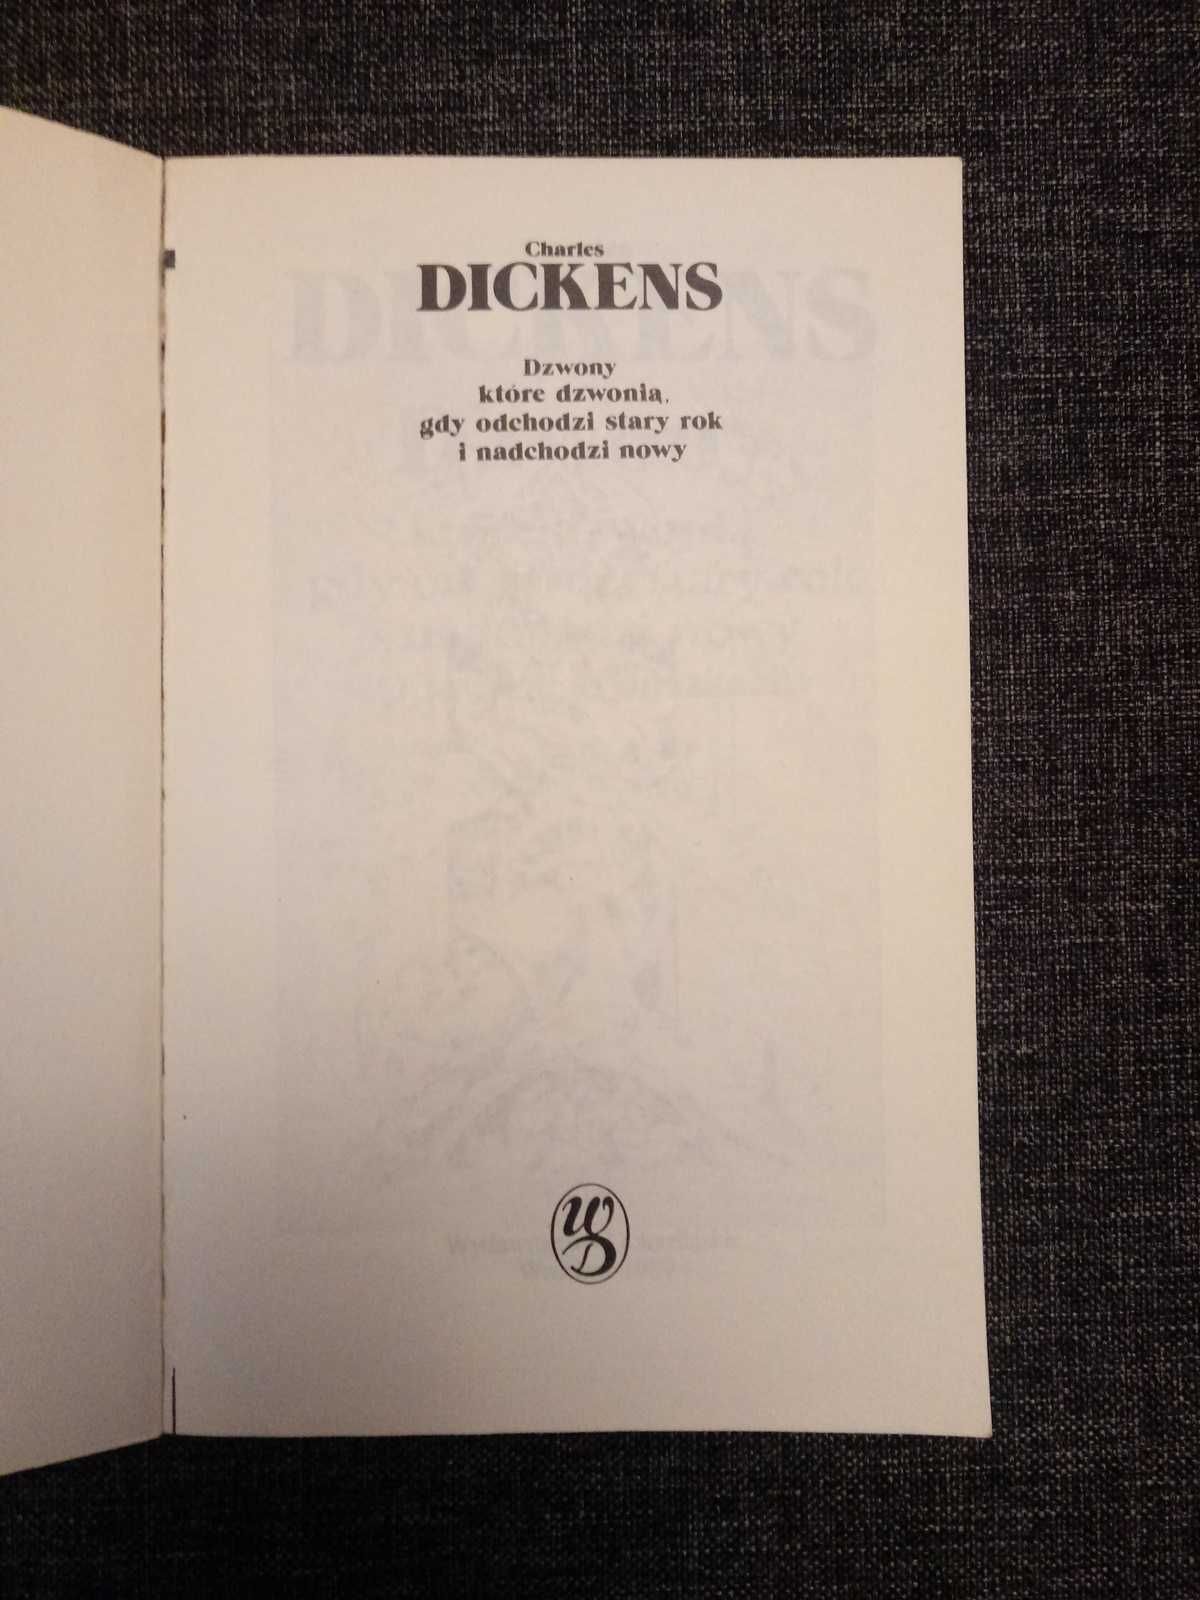 Charles Dickens "DZWONY" Wydawnictwo Dolnośląskie 1989r